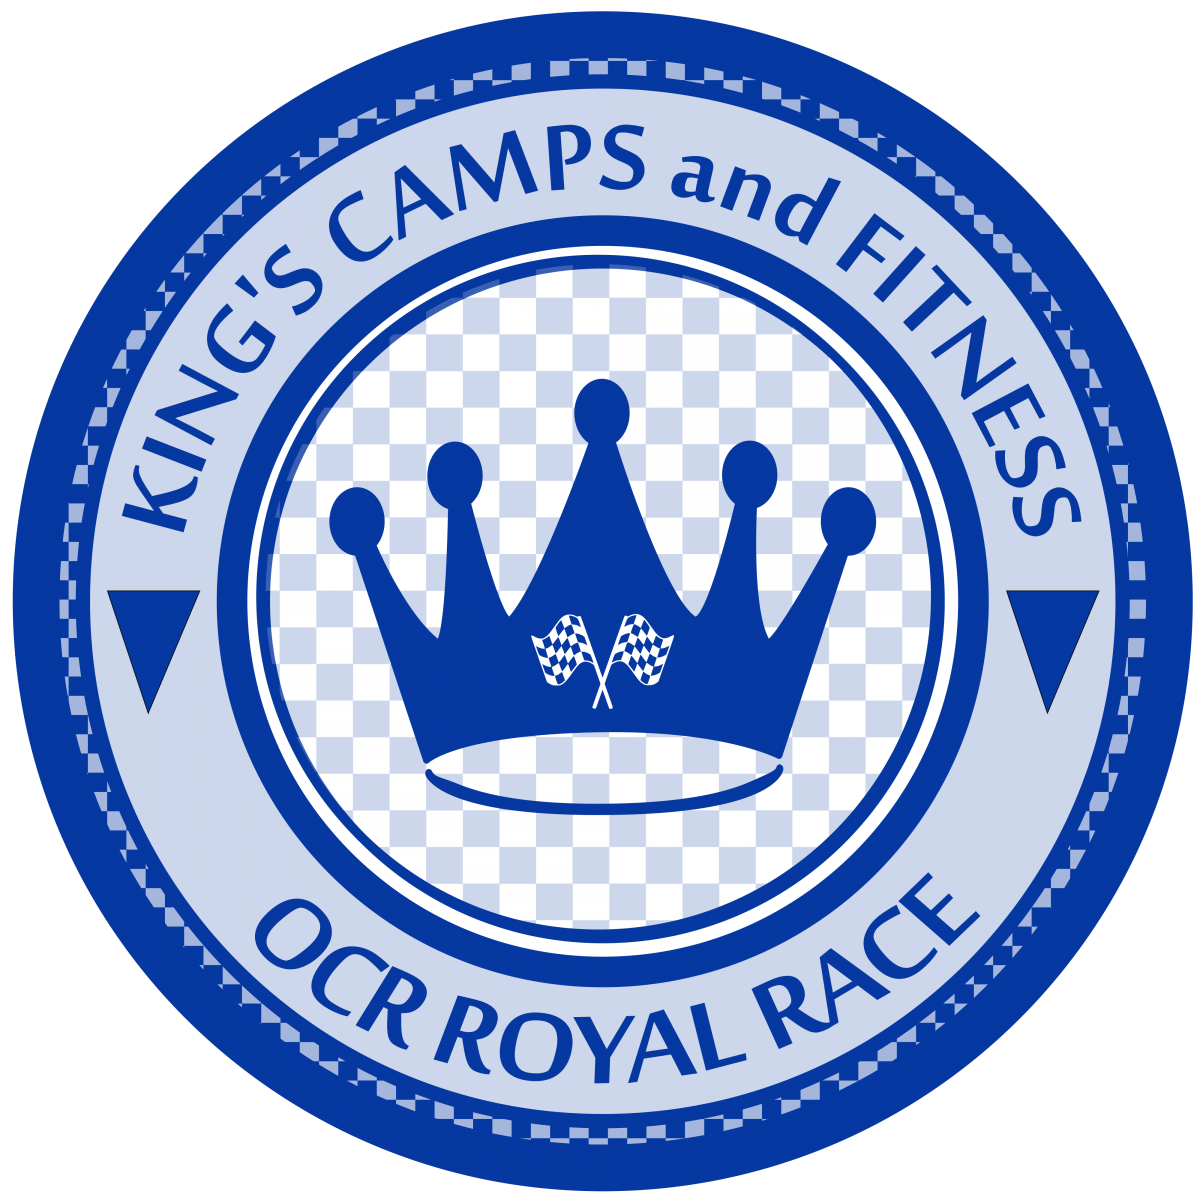 OCR Royal Race